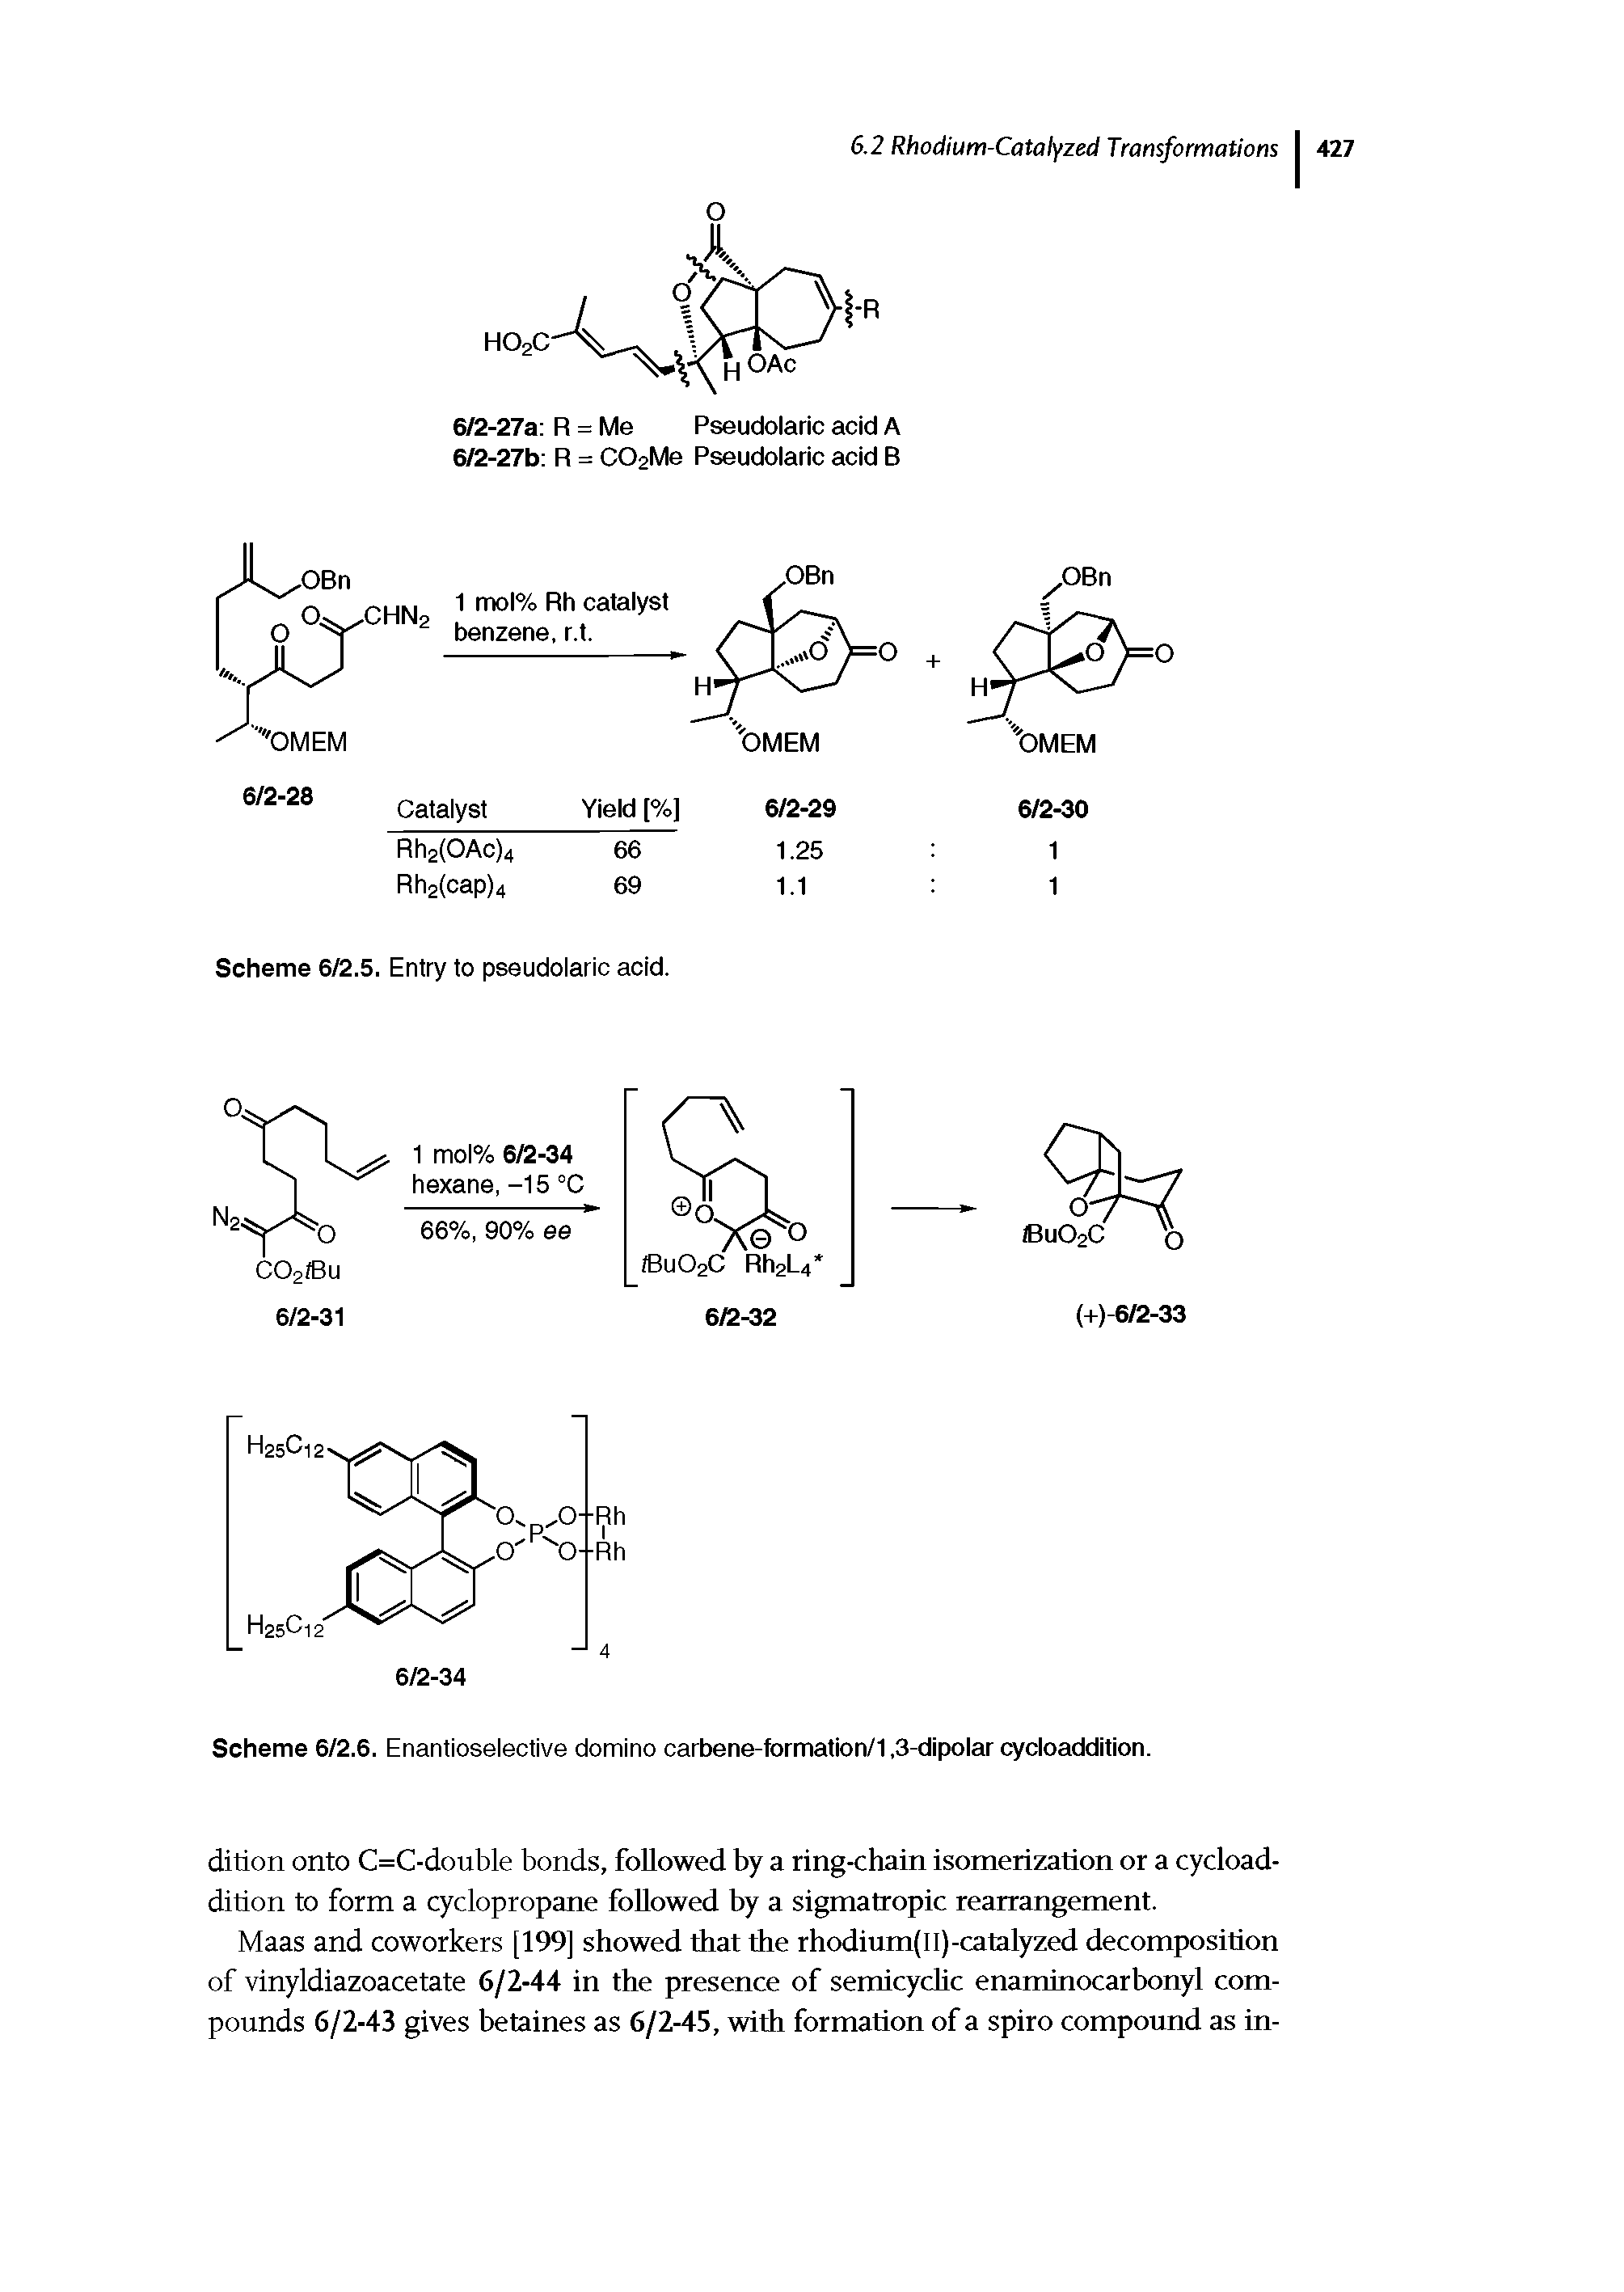 Scheme 6/2.6. Enantioselective domino carbene-formation/1,3-dipolar cycloaddition.